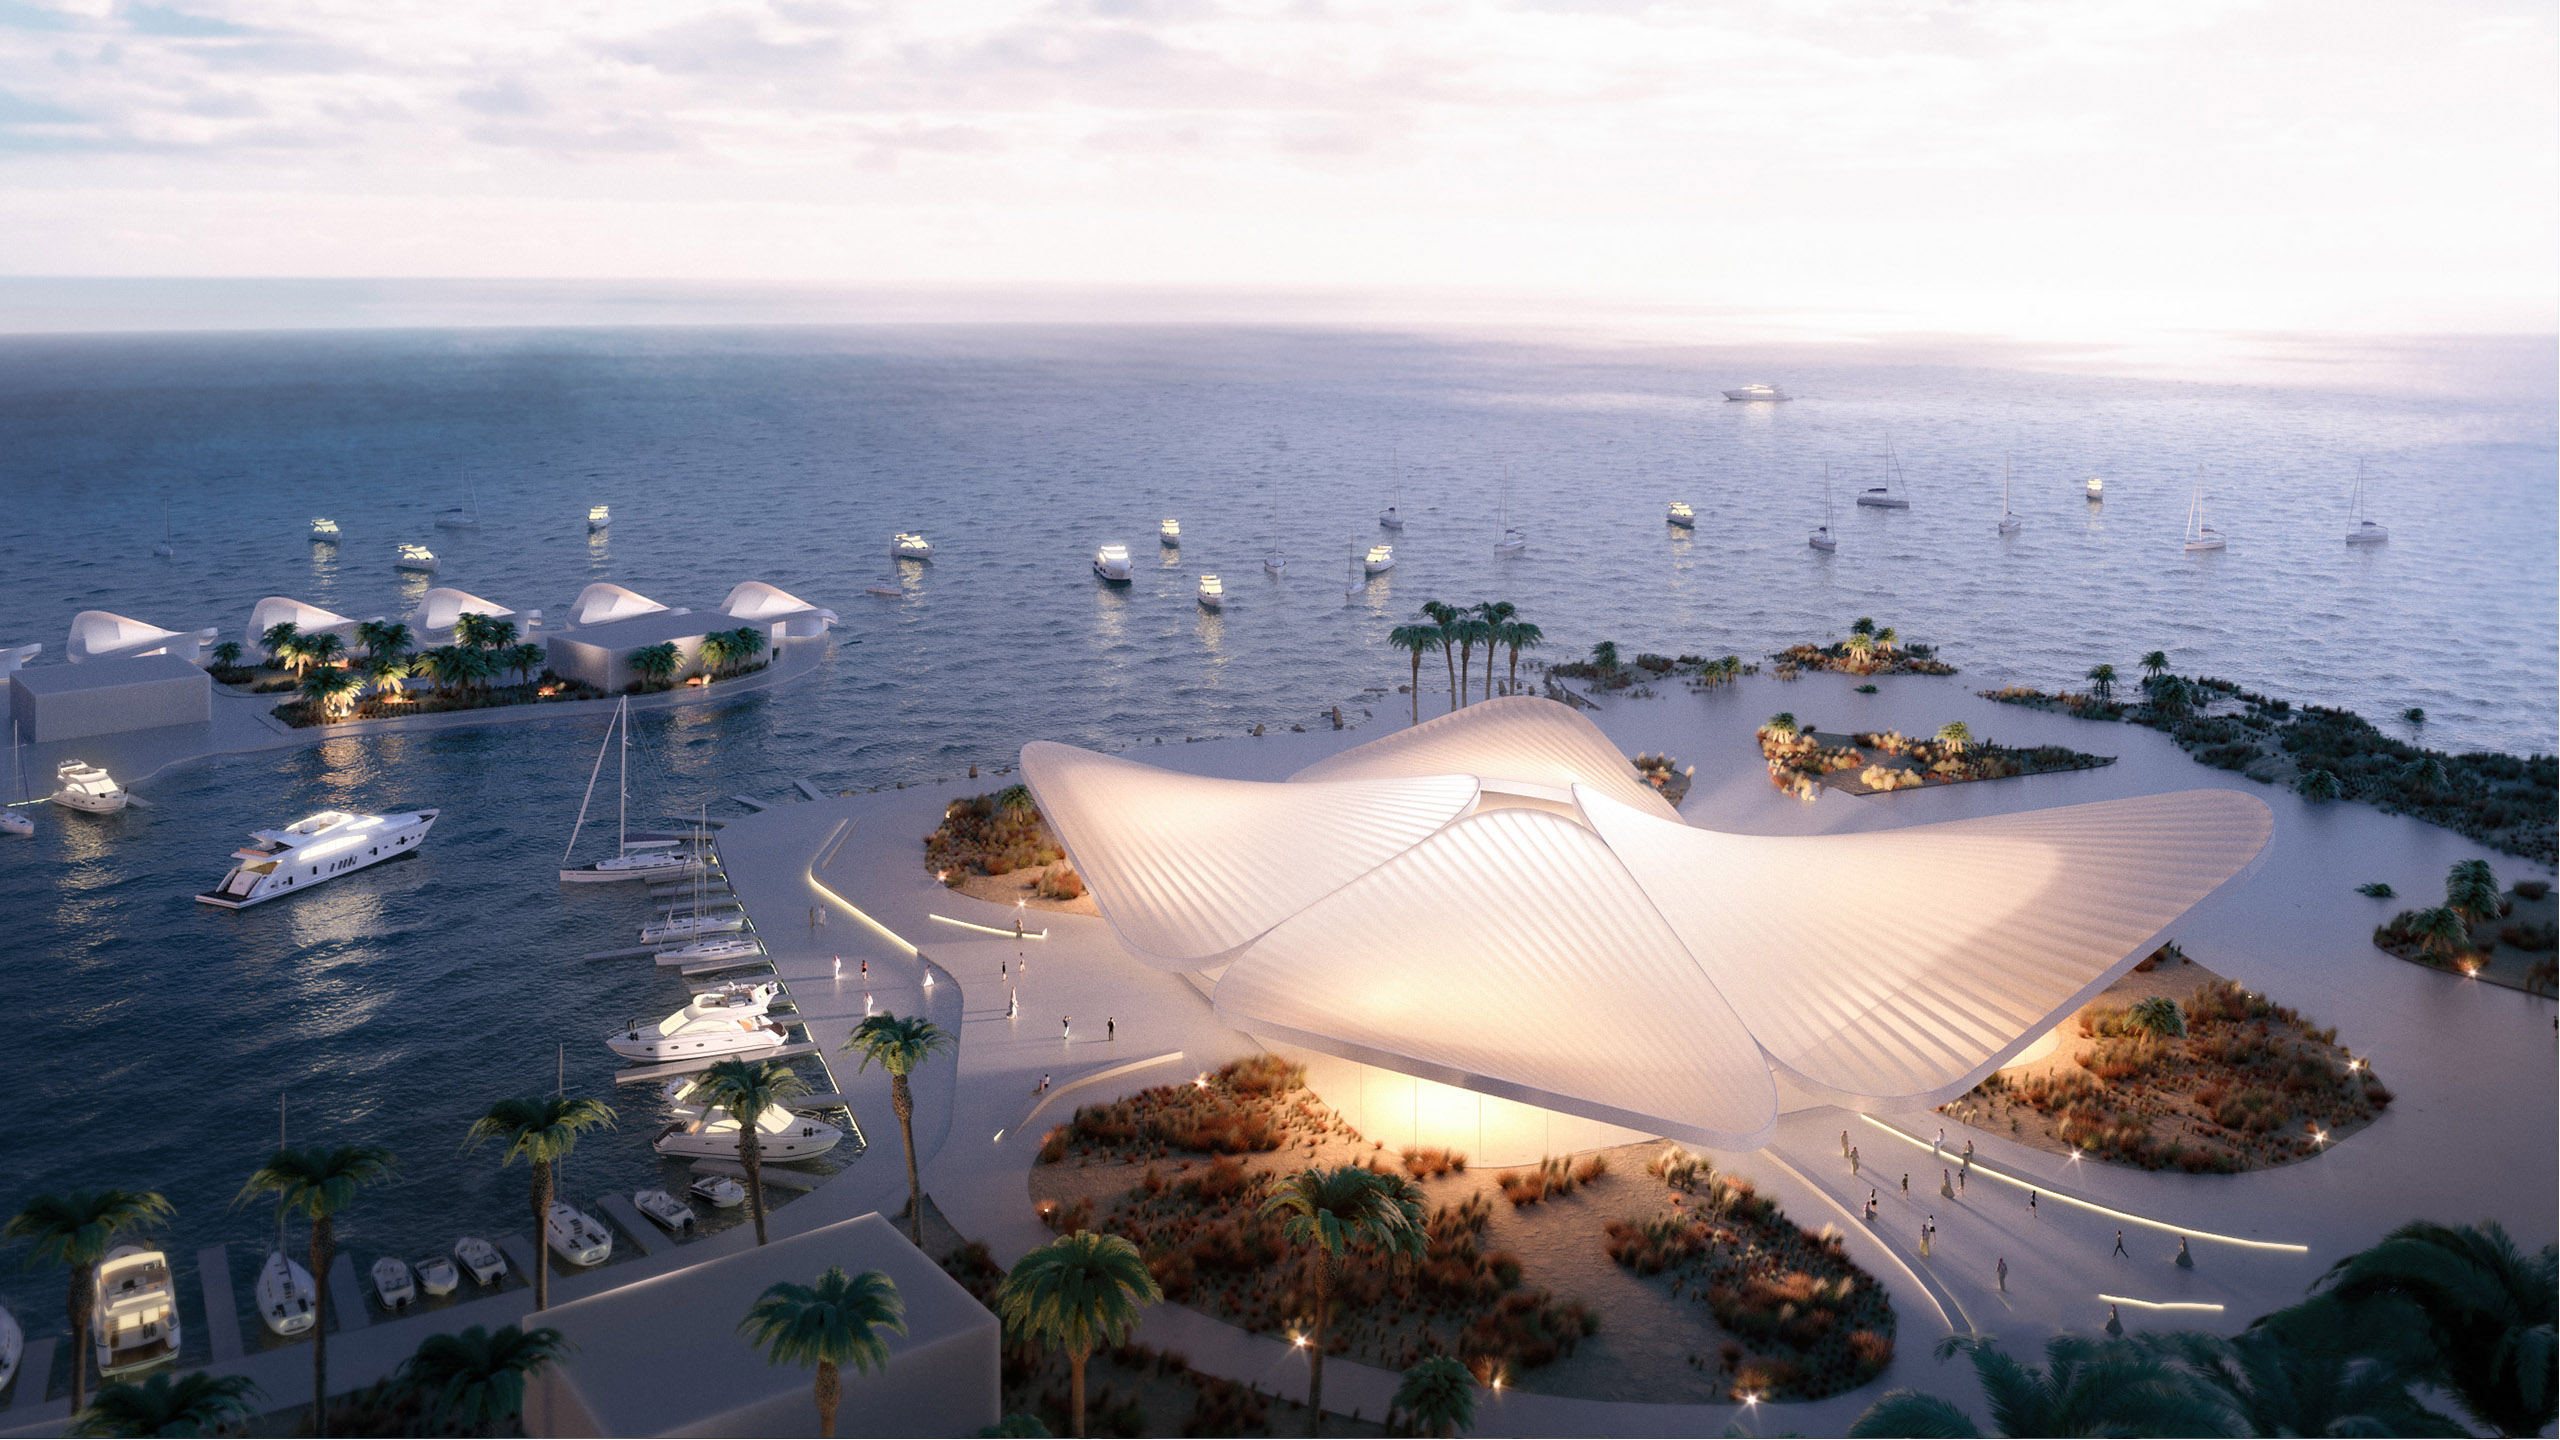 Премьера новой марины Jeddah Yacht Club and Marina